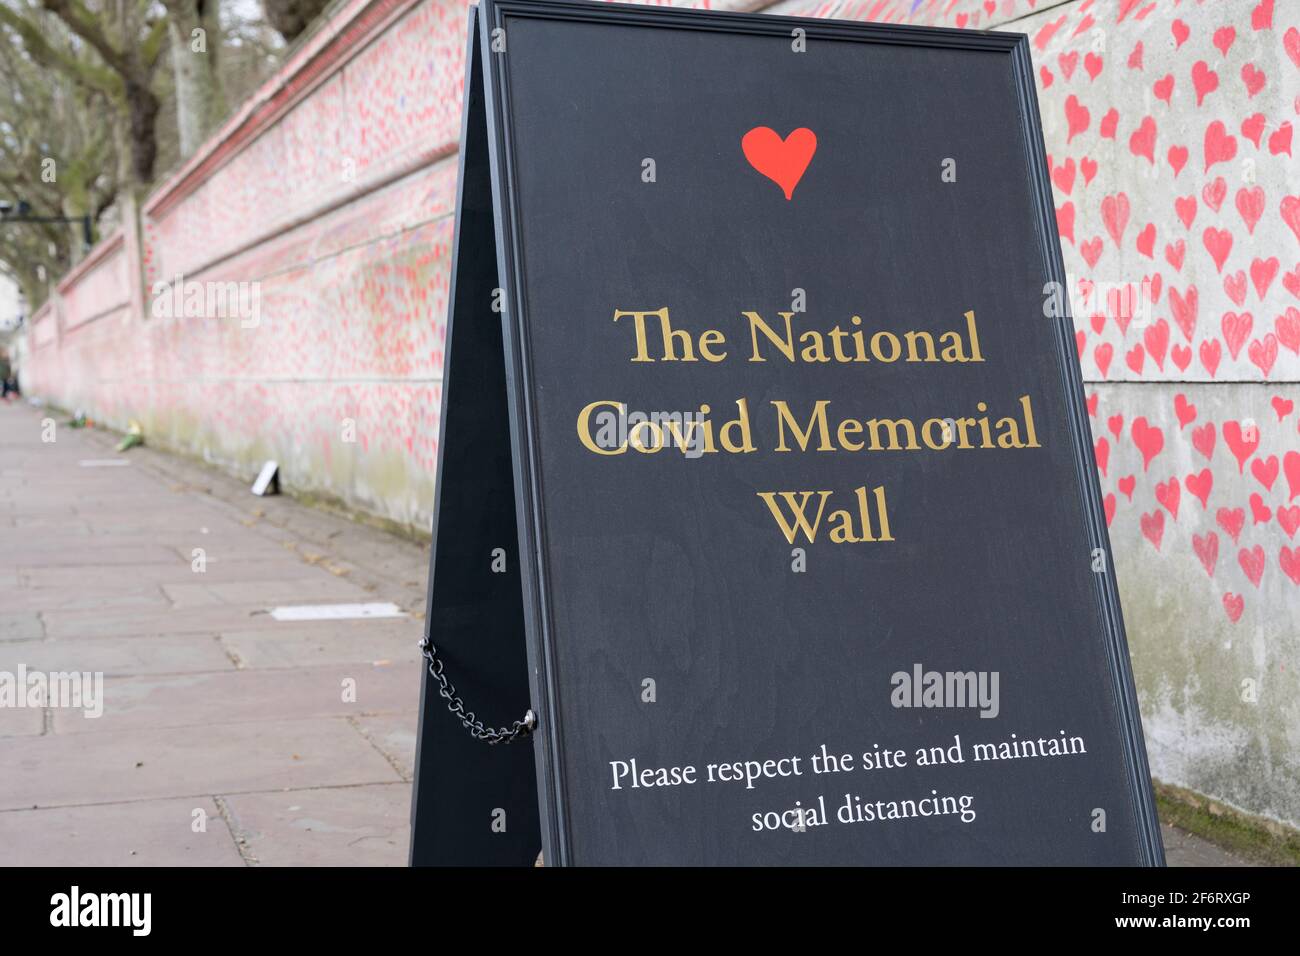 Le mur national du mémorial des Covid, banque sud de Londres, Angleterre, Royaume-Uni Banque D'Images